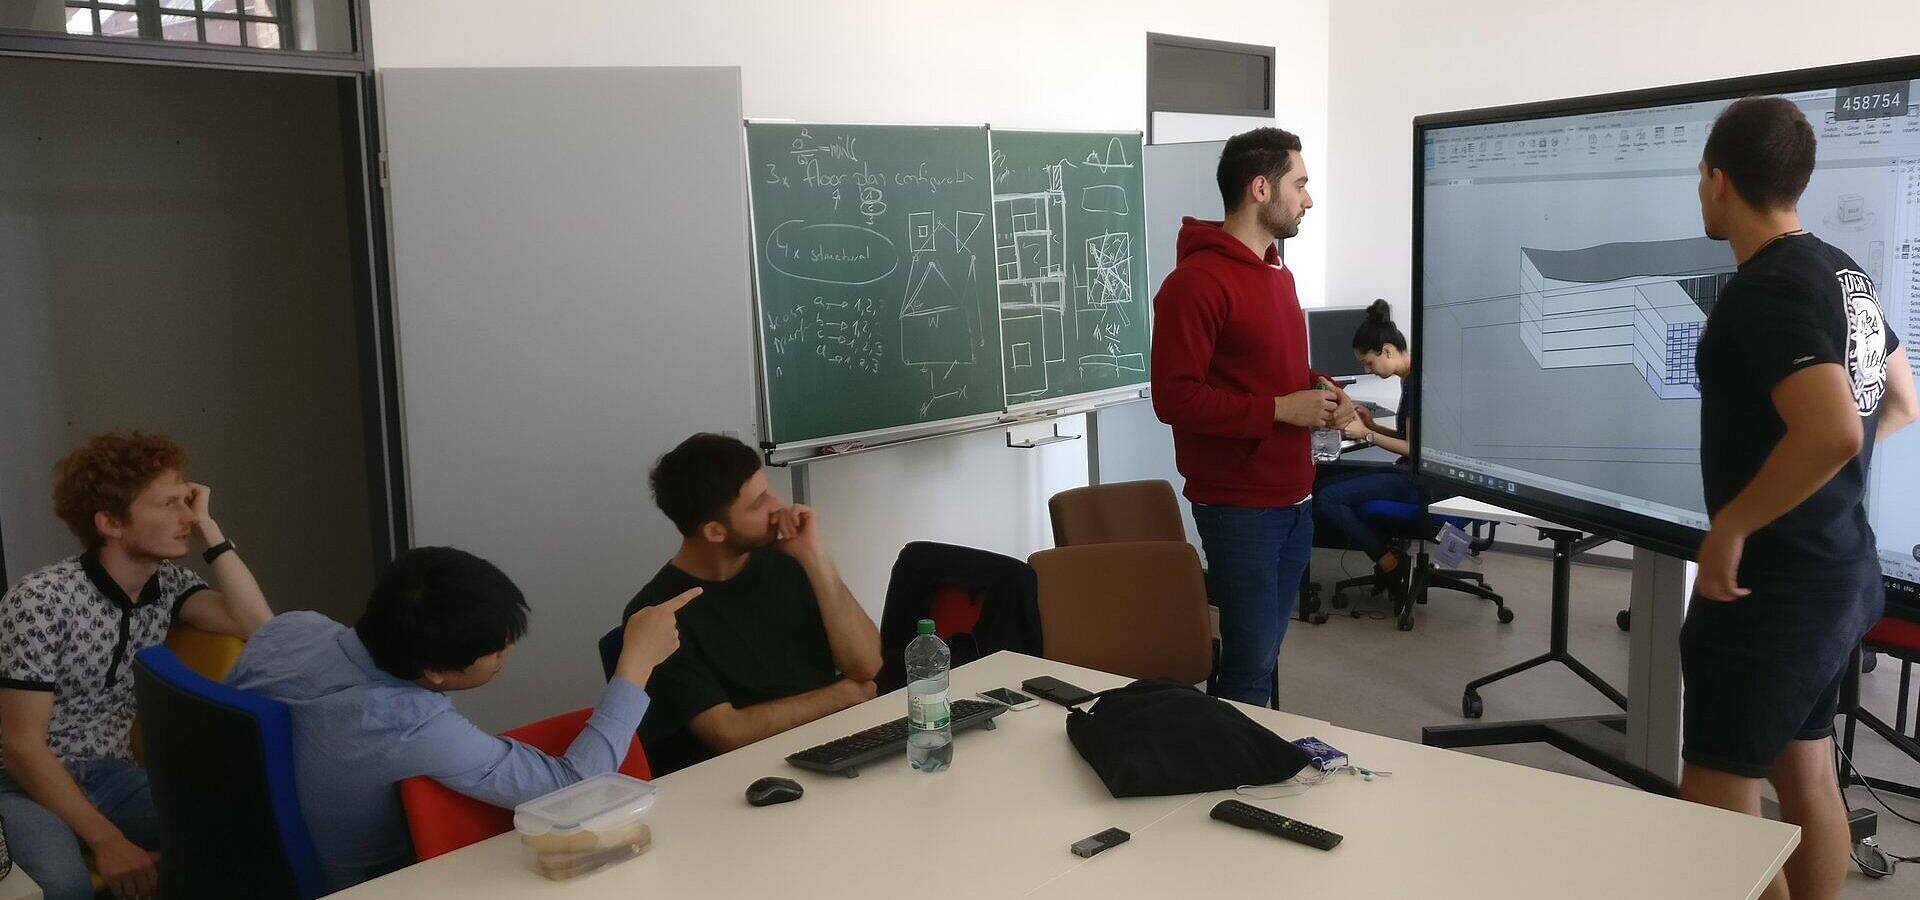 Sechs Studierende in einem Seminarraum stehend und sitzend im Gespräch über einen Gebäudeplan, der auf einem großen Smartboard angezeigt wird